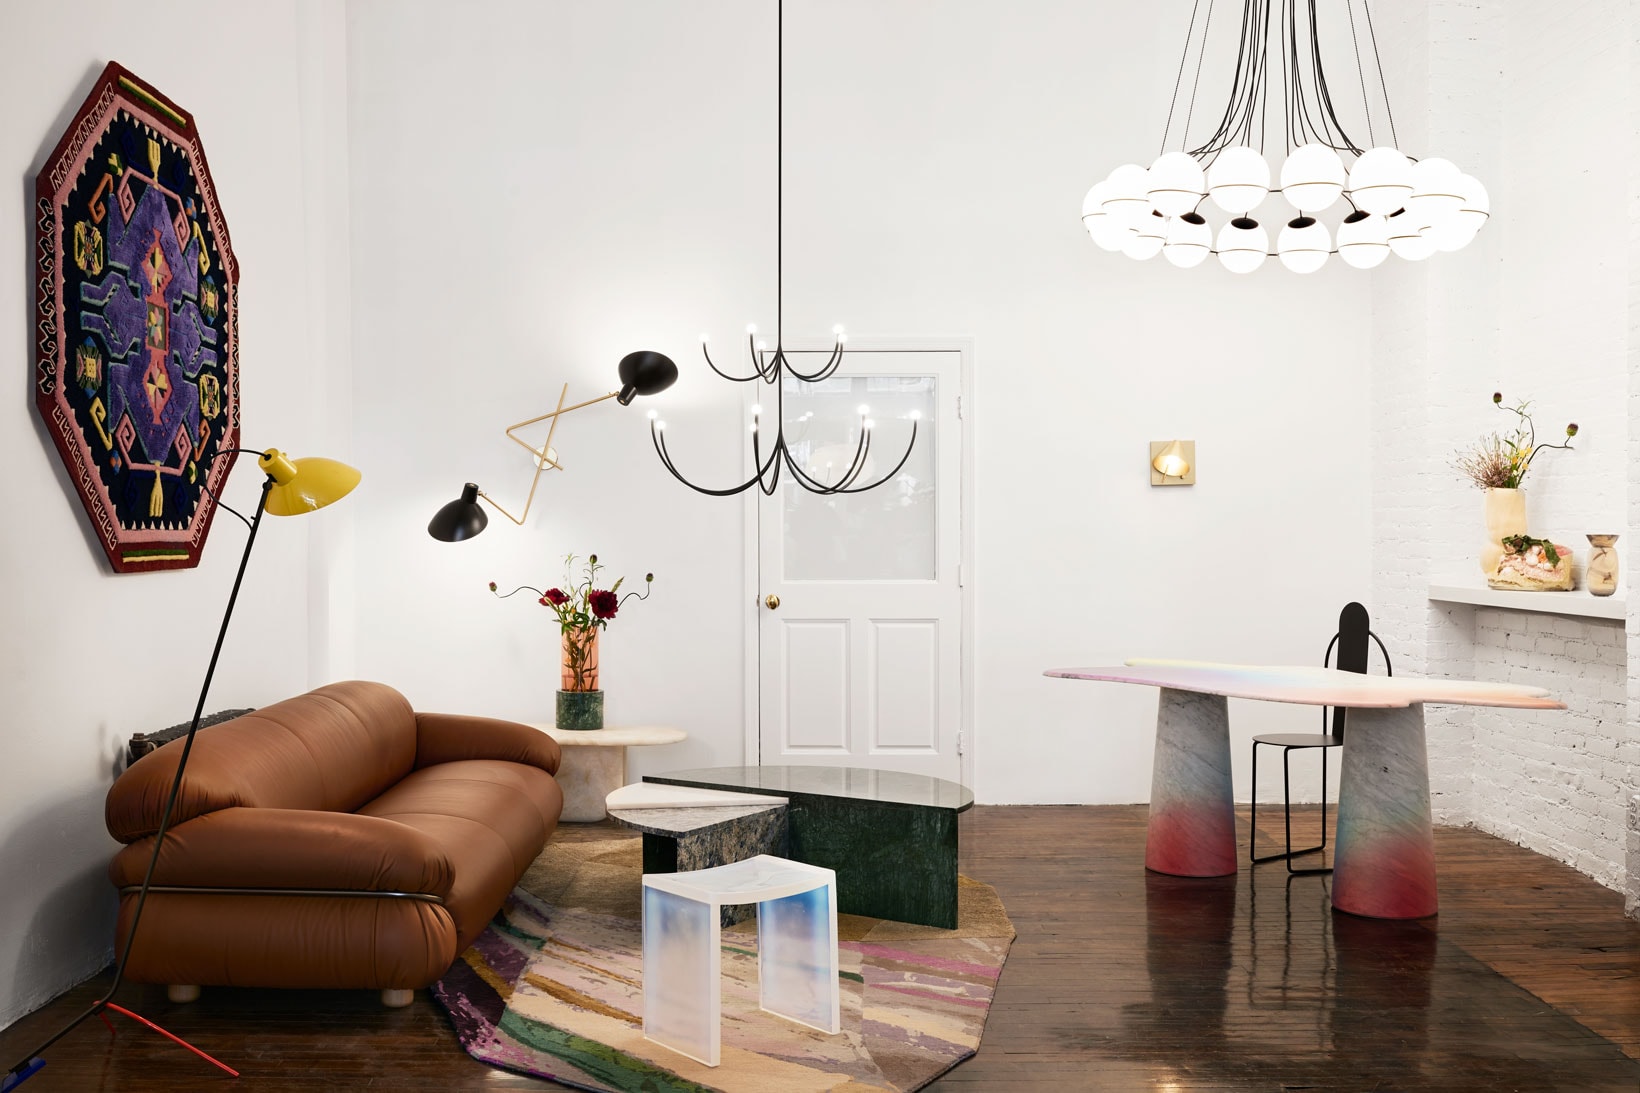 BEST Louis Vuitton Area Rugs Bedroom Rug Floor Decor Home Decor